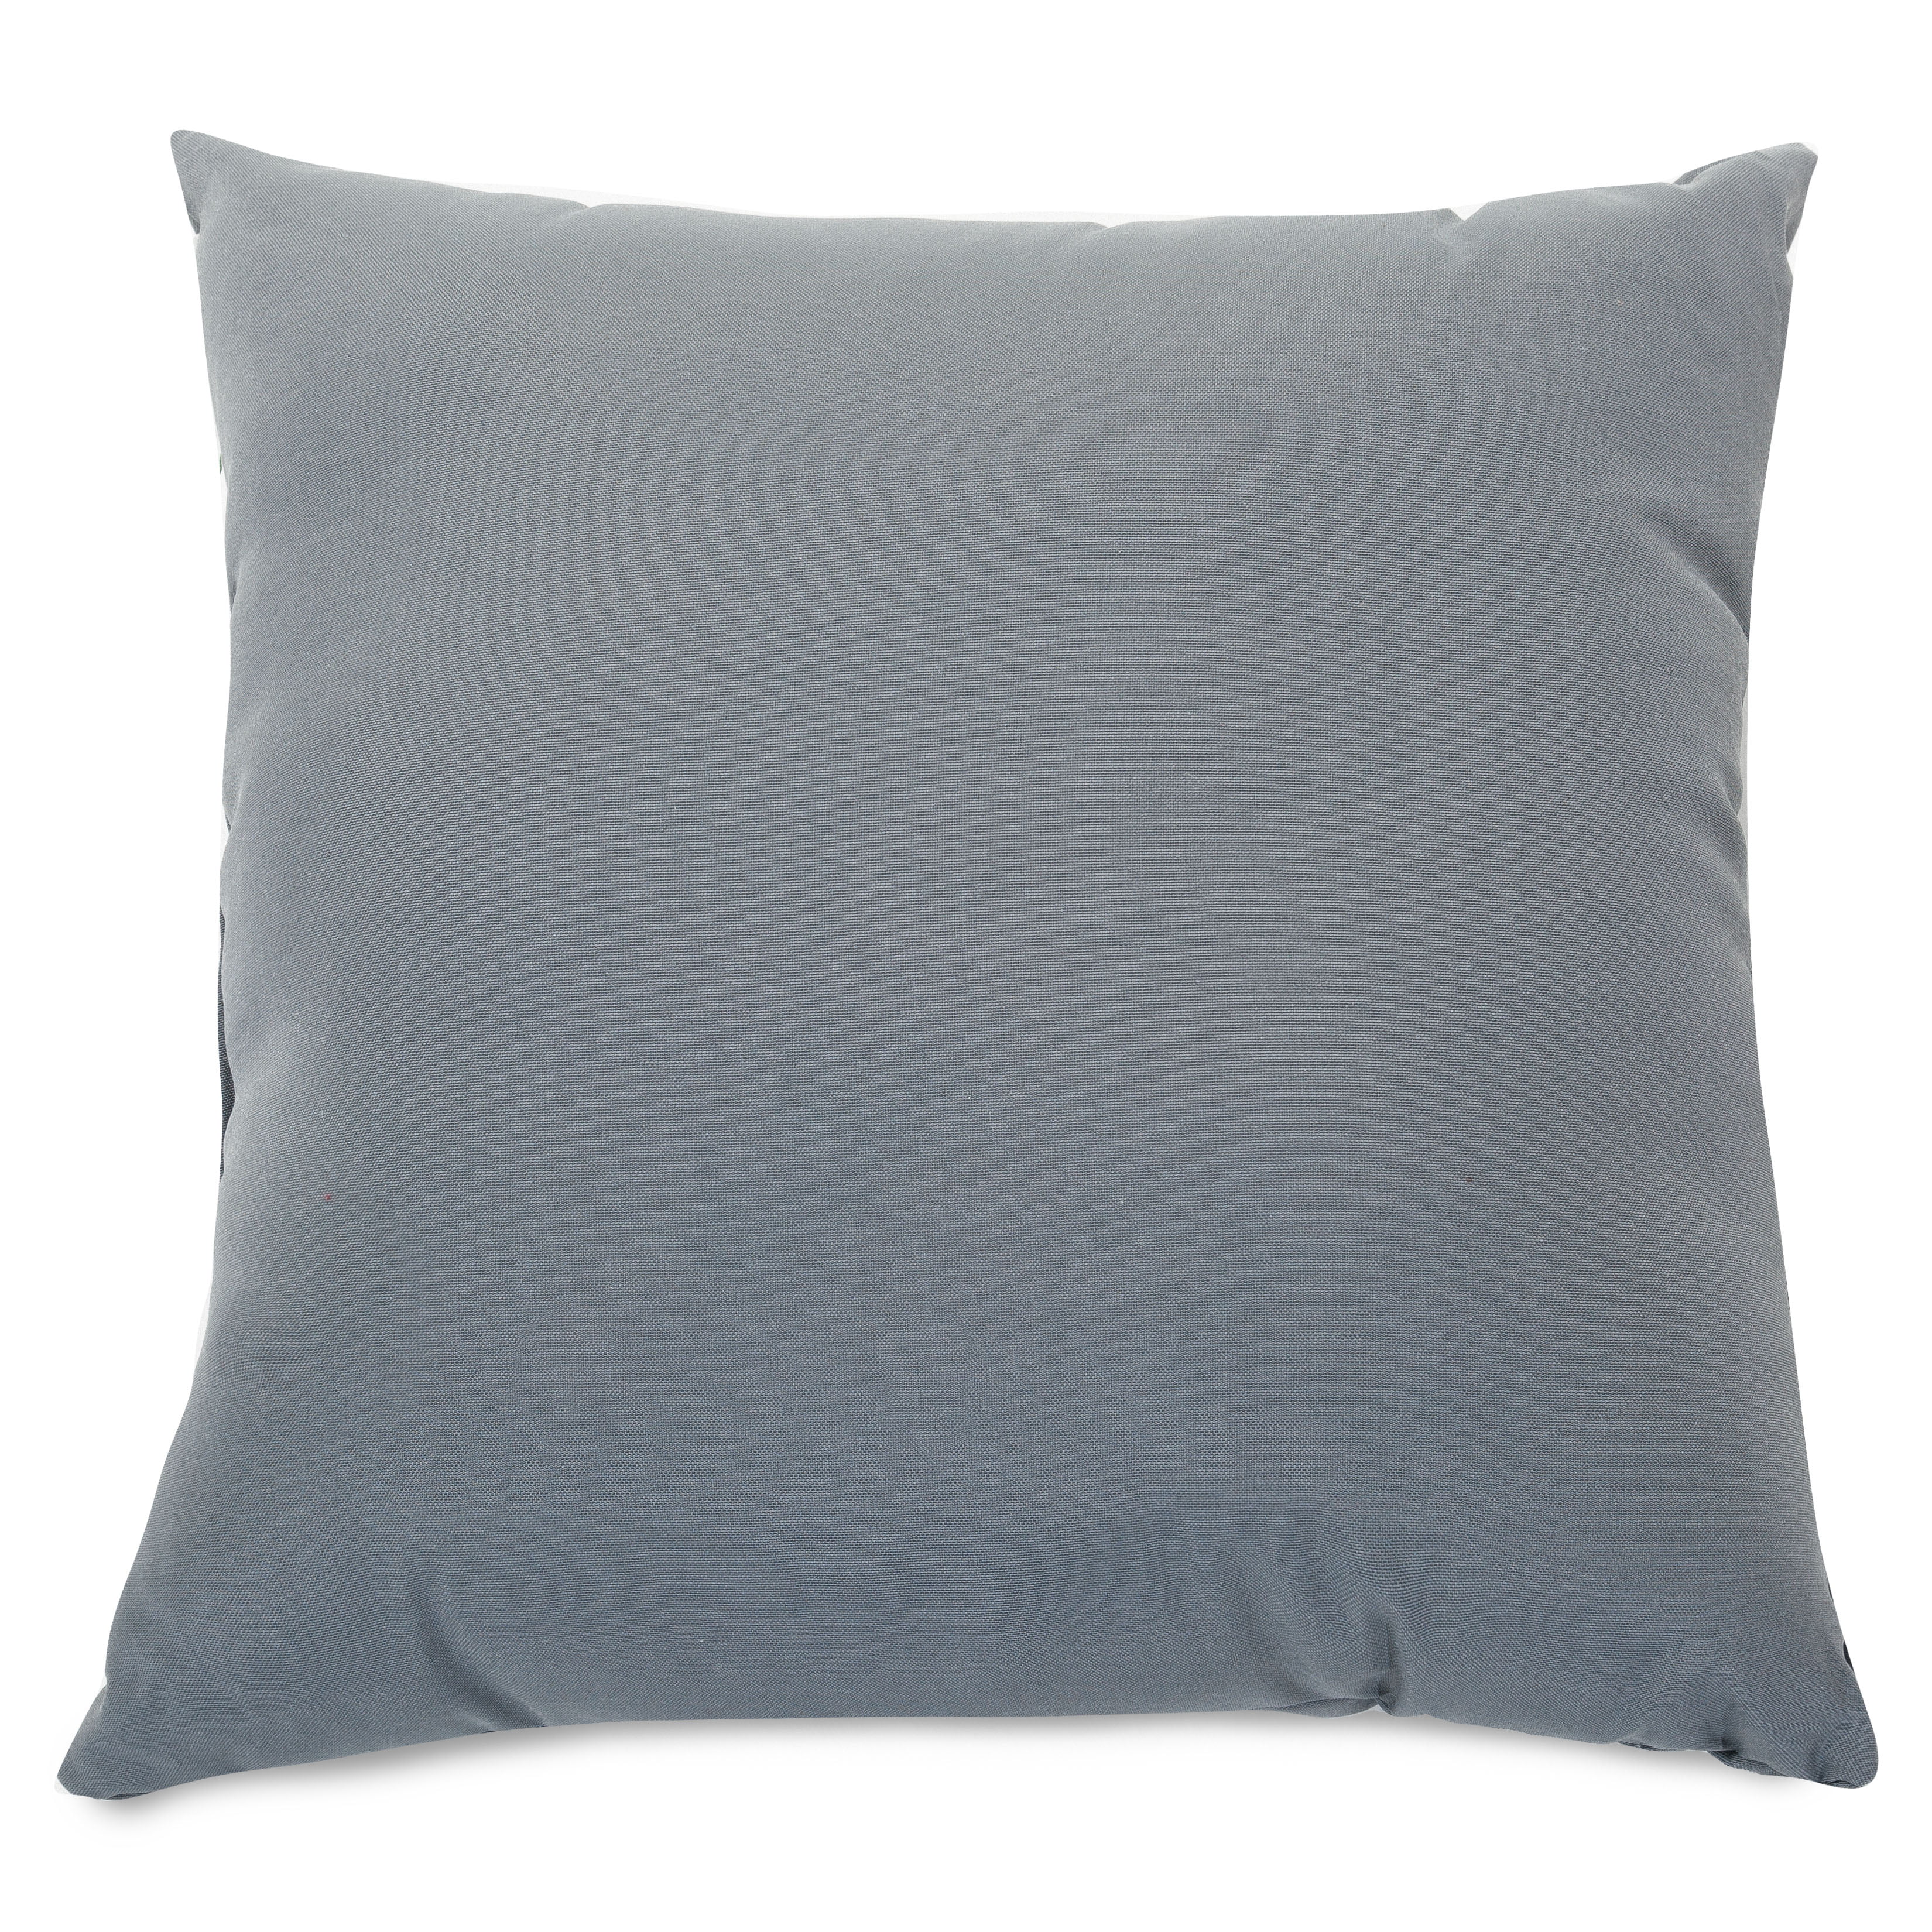 Large grey cushions cm by cm